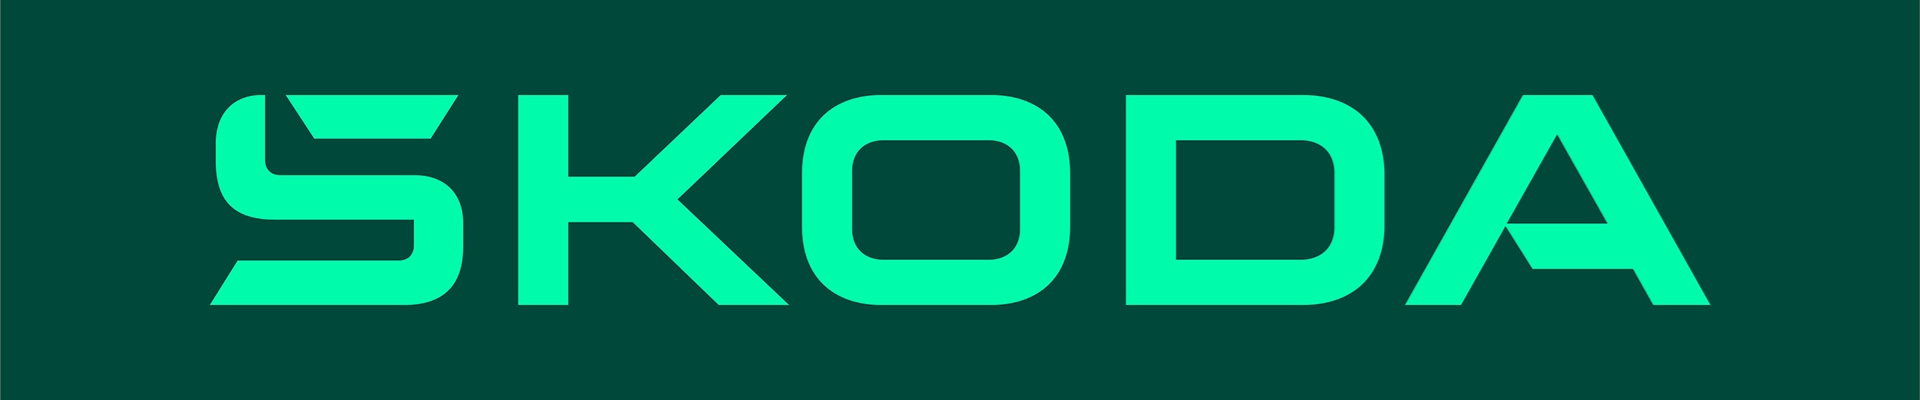 Kodiaq і Superb: Збільшення простору, комфорту та контролю